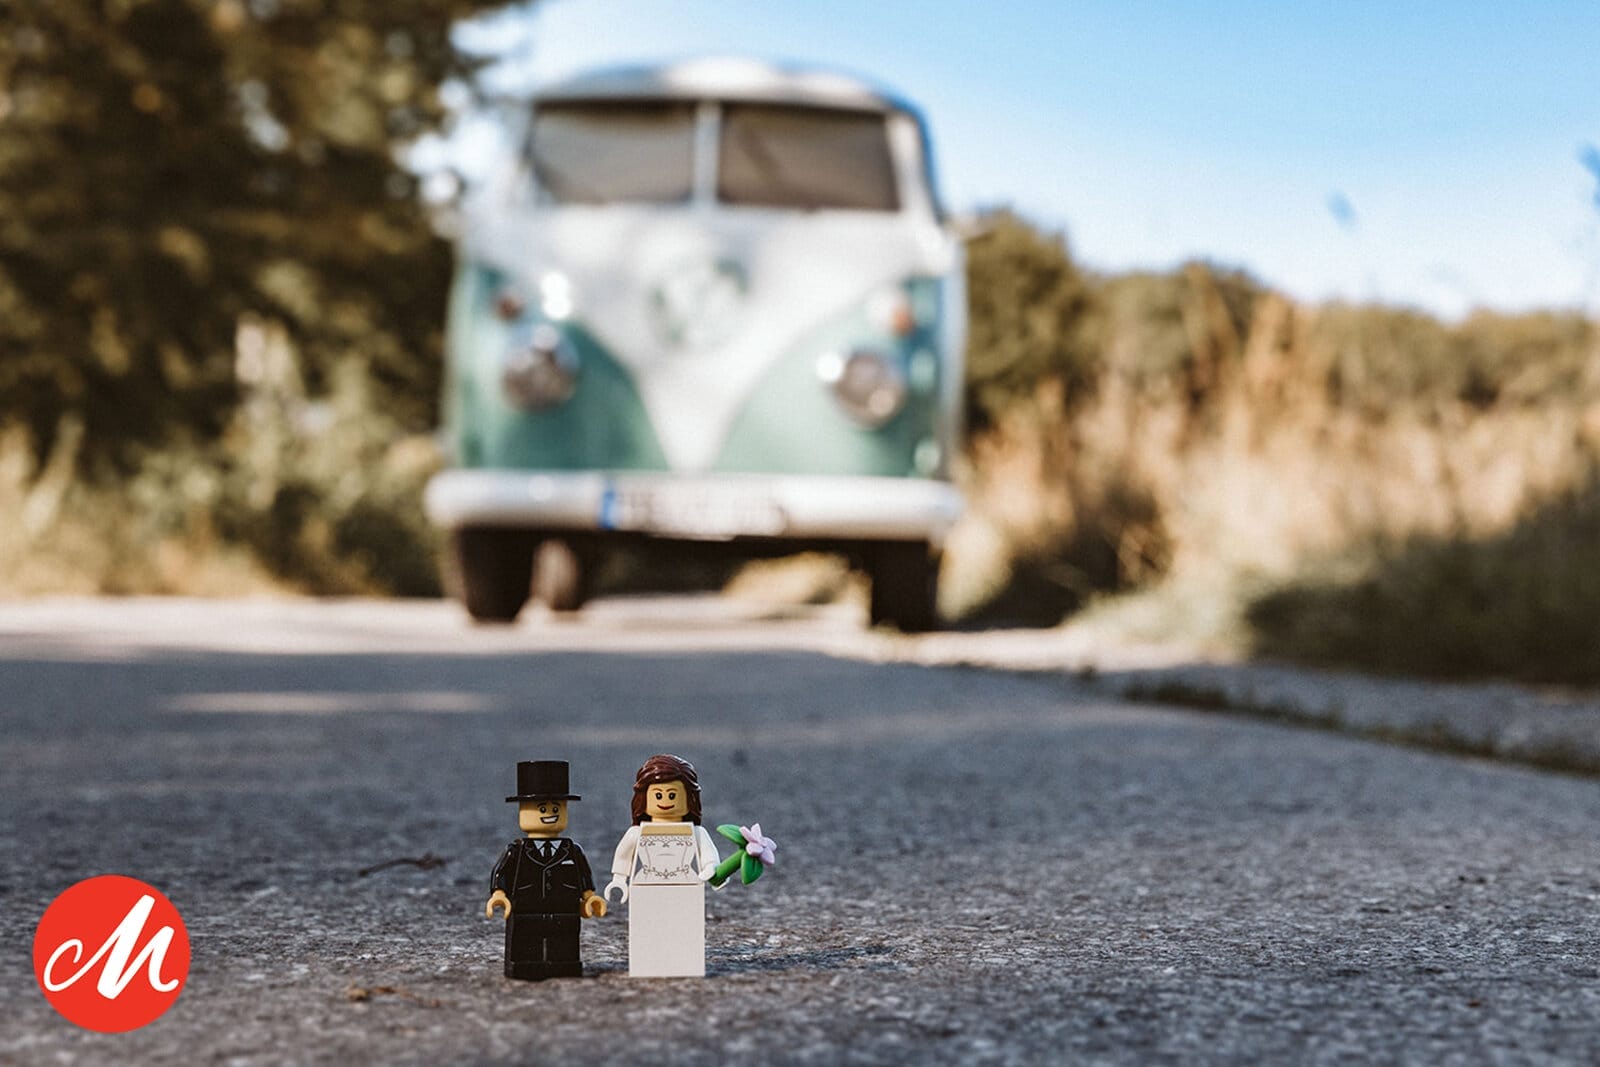 Hochzeit Heiraten Hochzeitsfotograf Dominik Neugebauer - Lego Männchen in Form eines Brautpaars vor einem VW Bulli. Die Lego Männchen stehen auf der Straße.